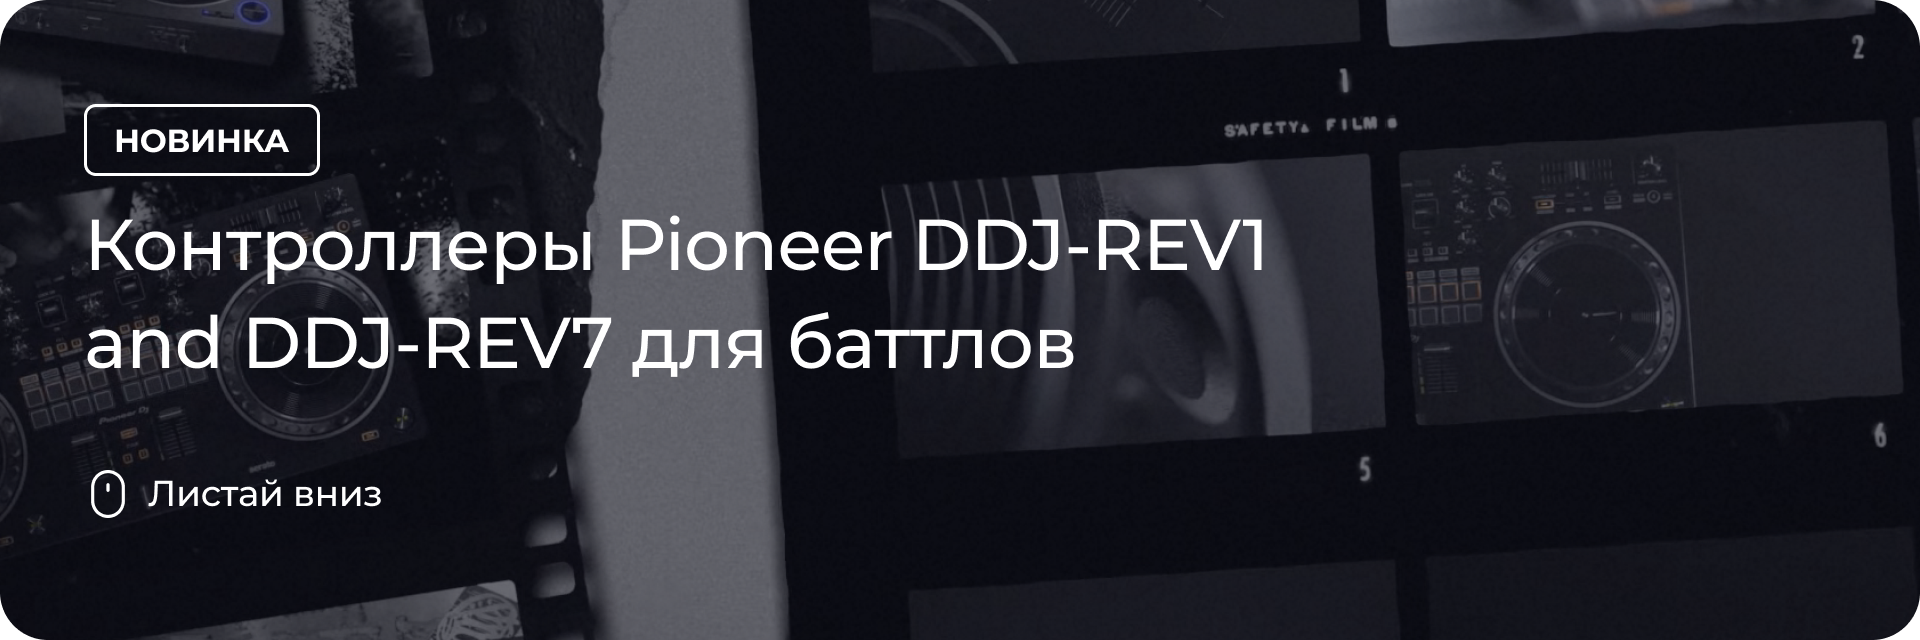 Контроллеры Pioneer DDJ-REV1 and DDJ-REV7 для баттлов